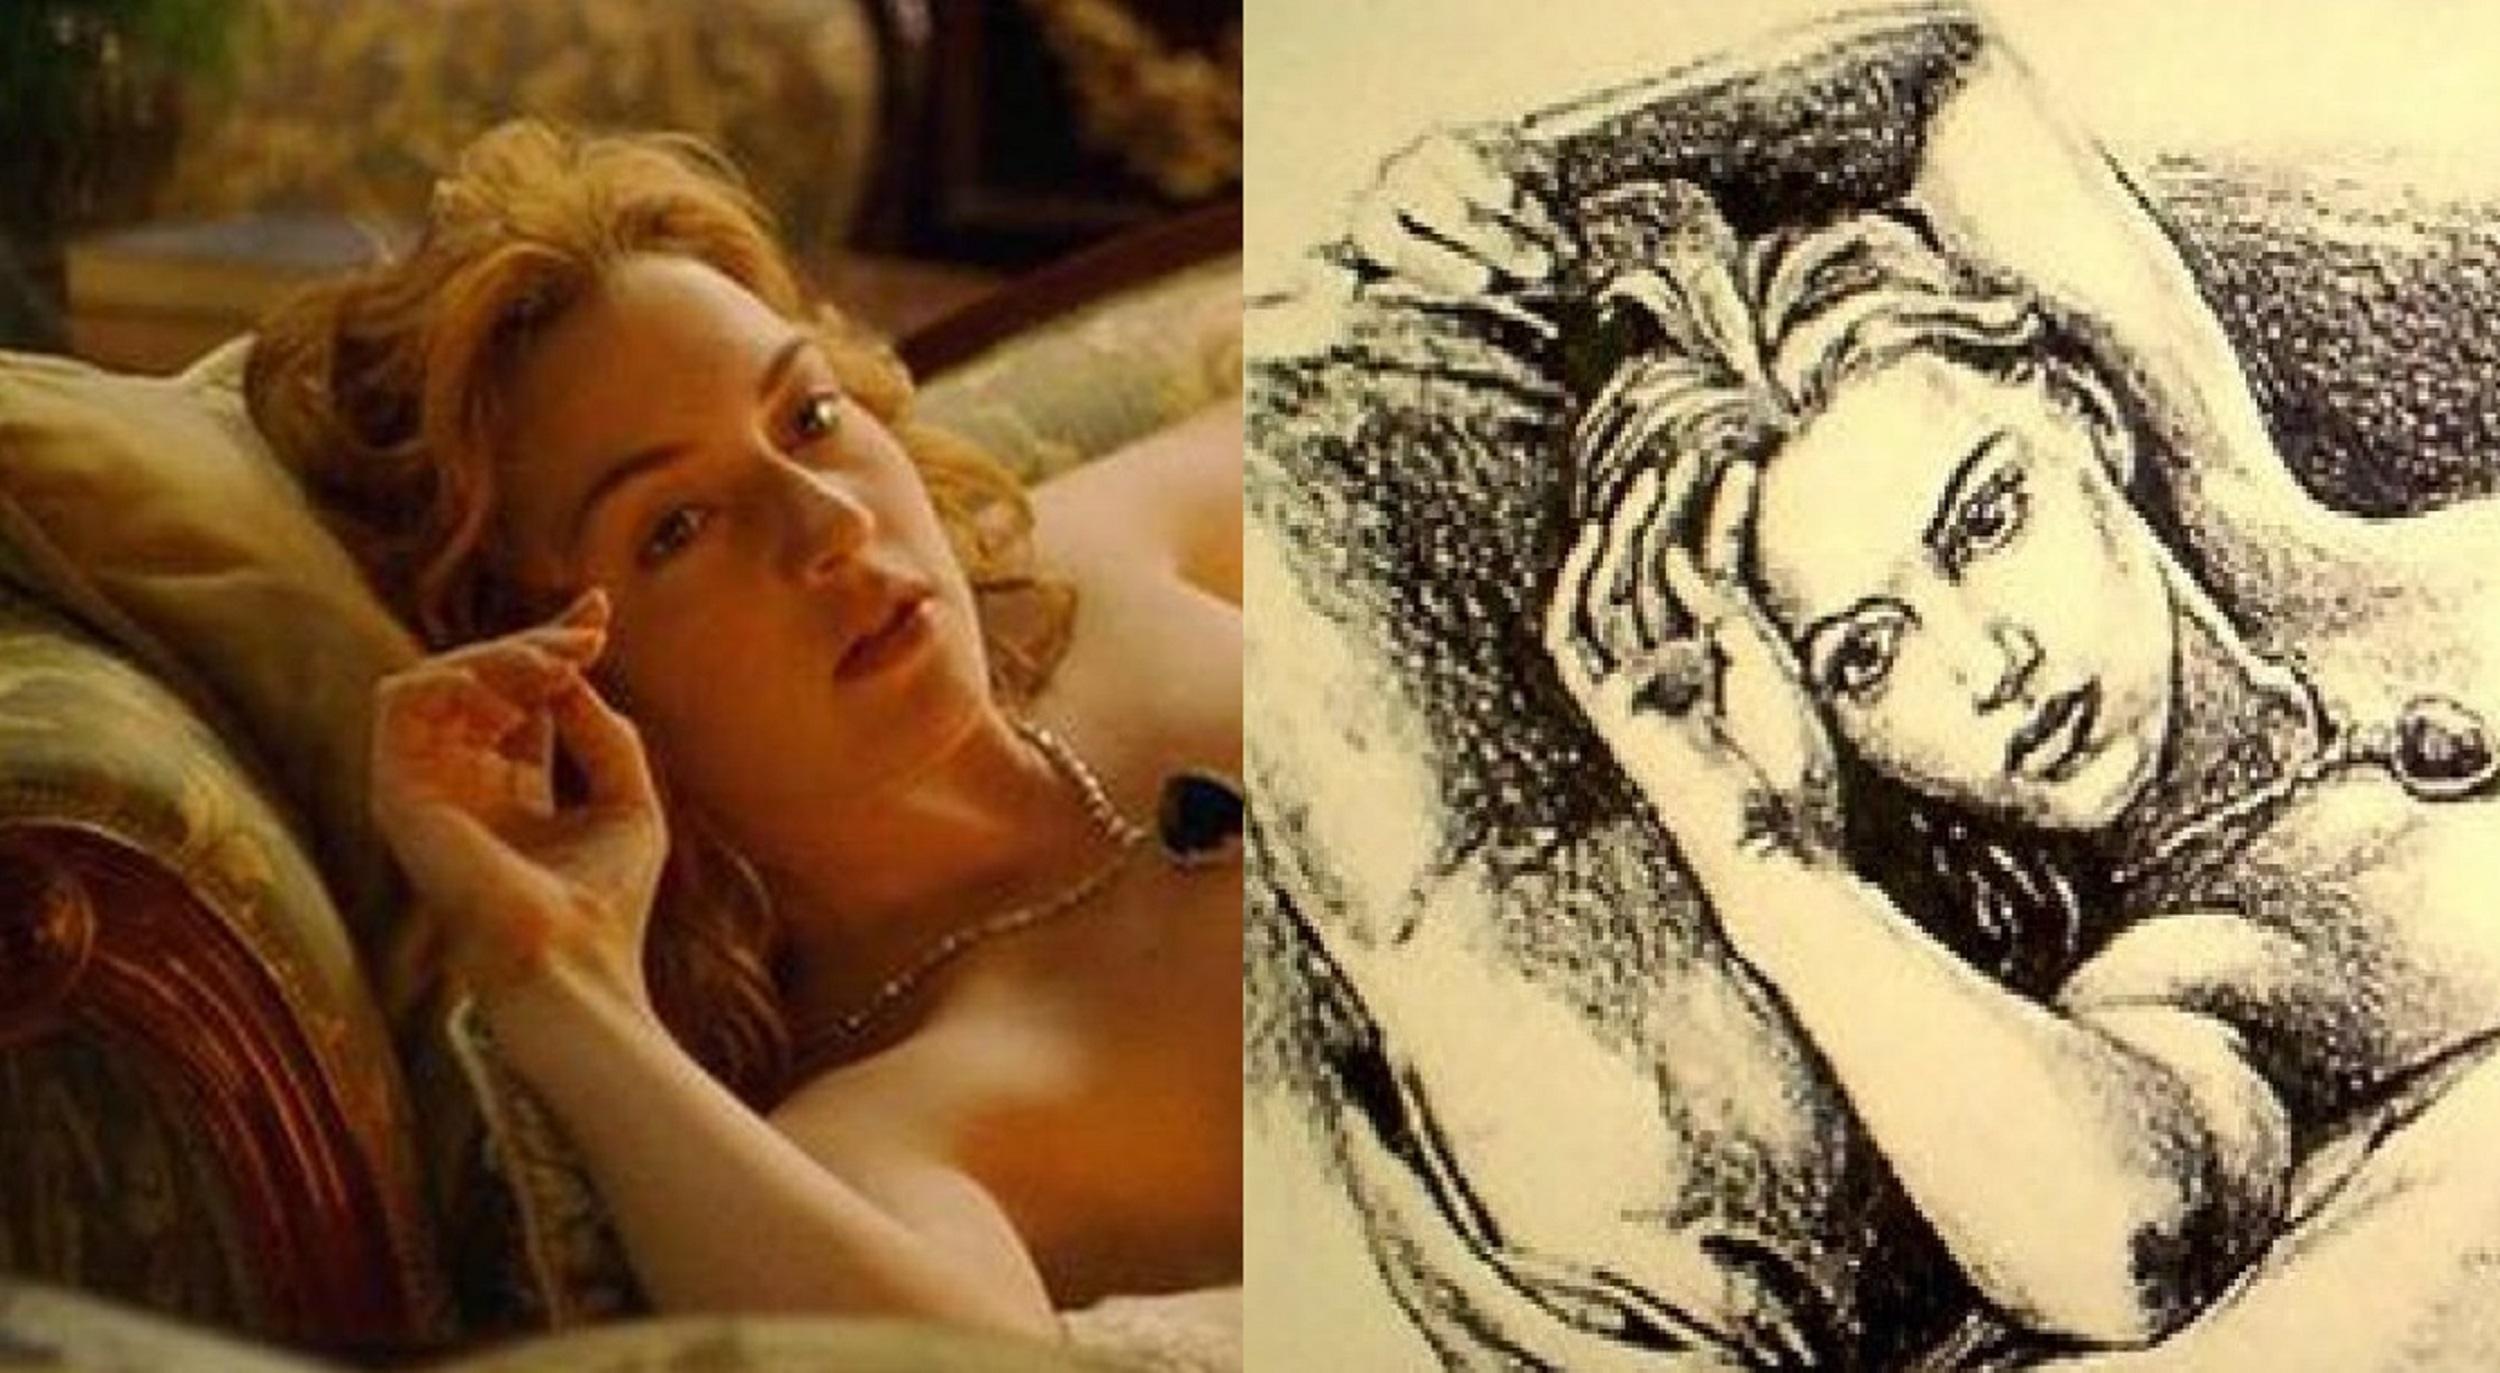 ¡Bombazo! A 20 años de “Titanic” se descubrió que el verdadero autor del “retrato de Rose” no fue DiCaprio, sino…